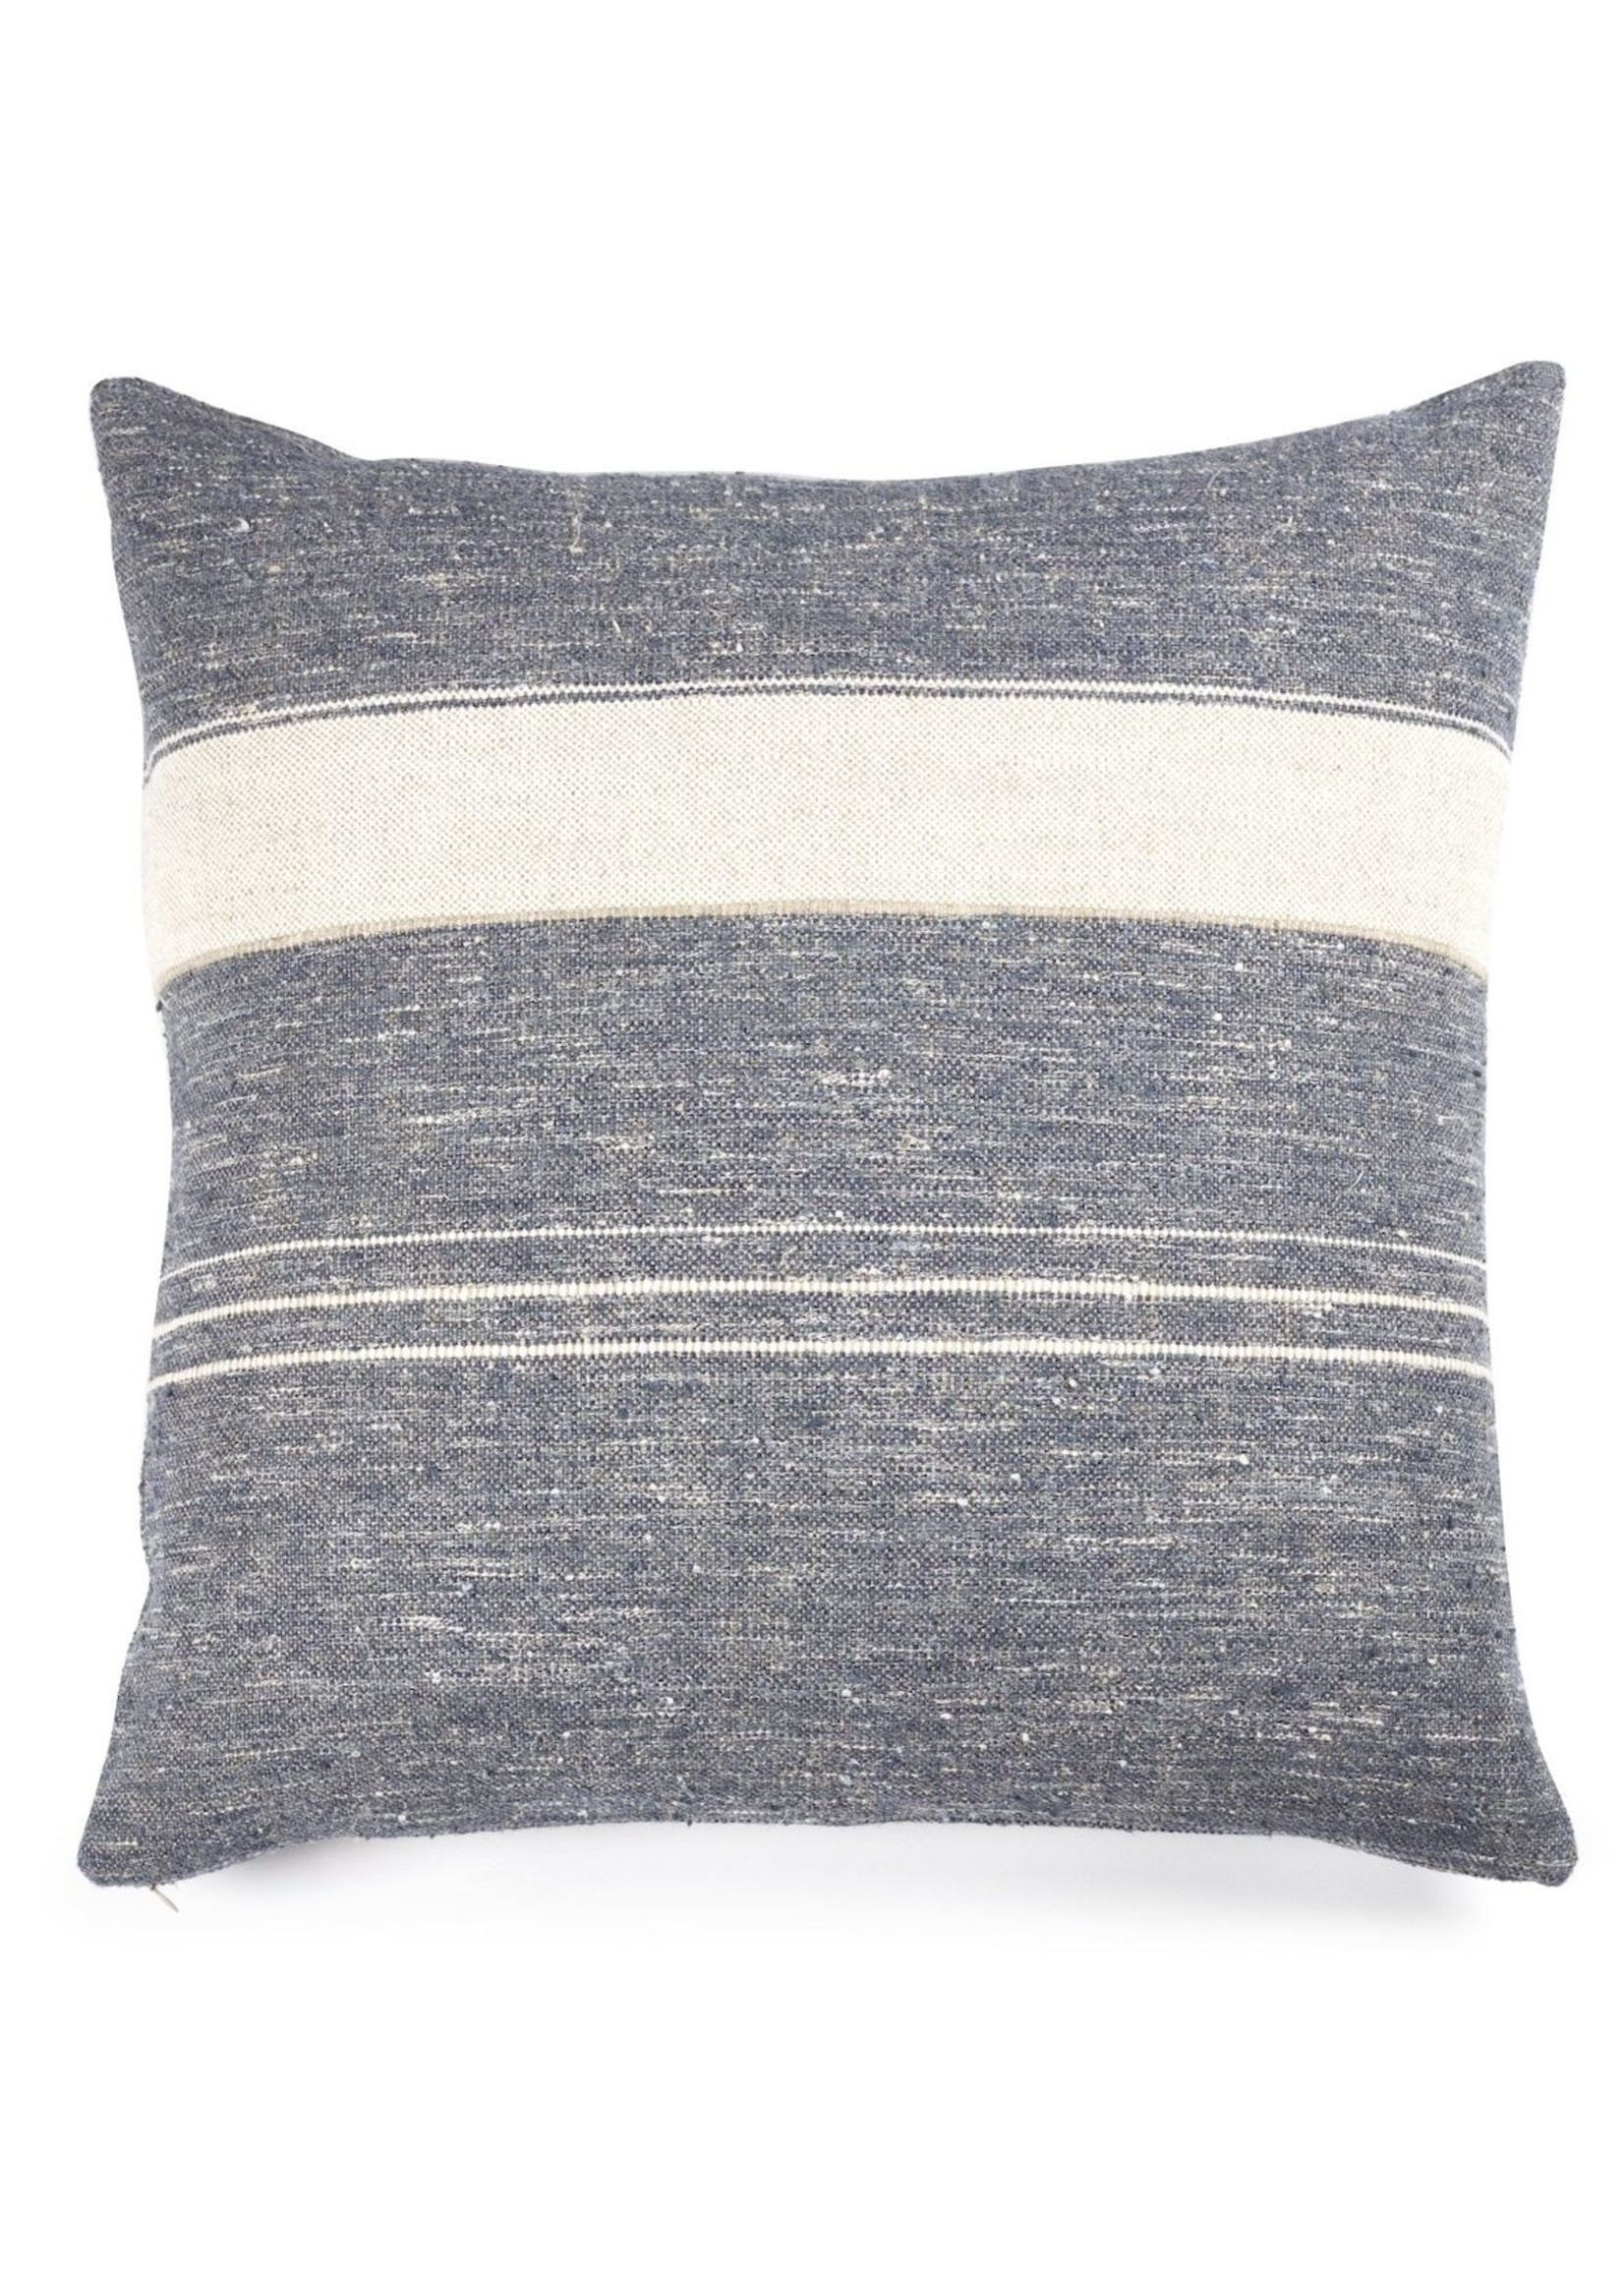 Libeco Libeco North Sea Stripe Linen Pillow Cover